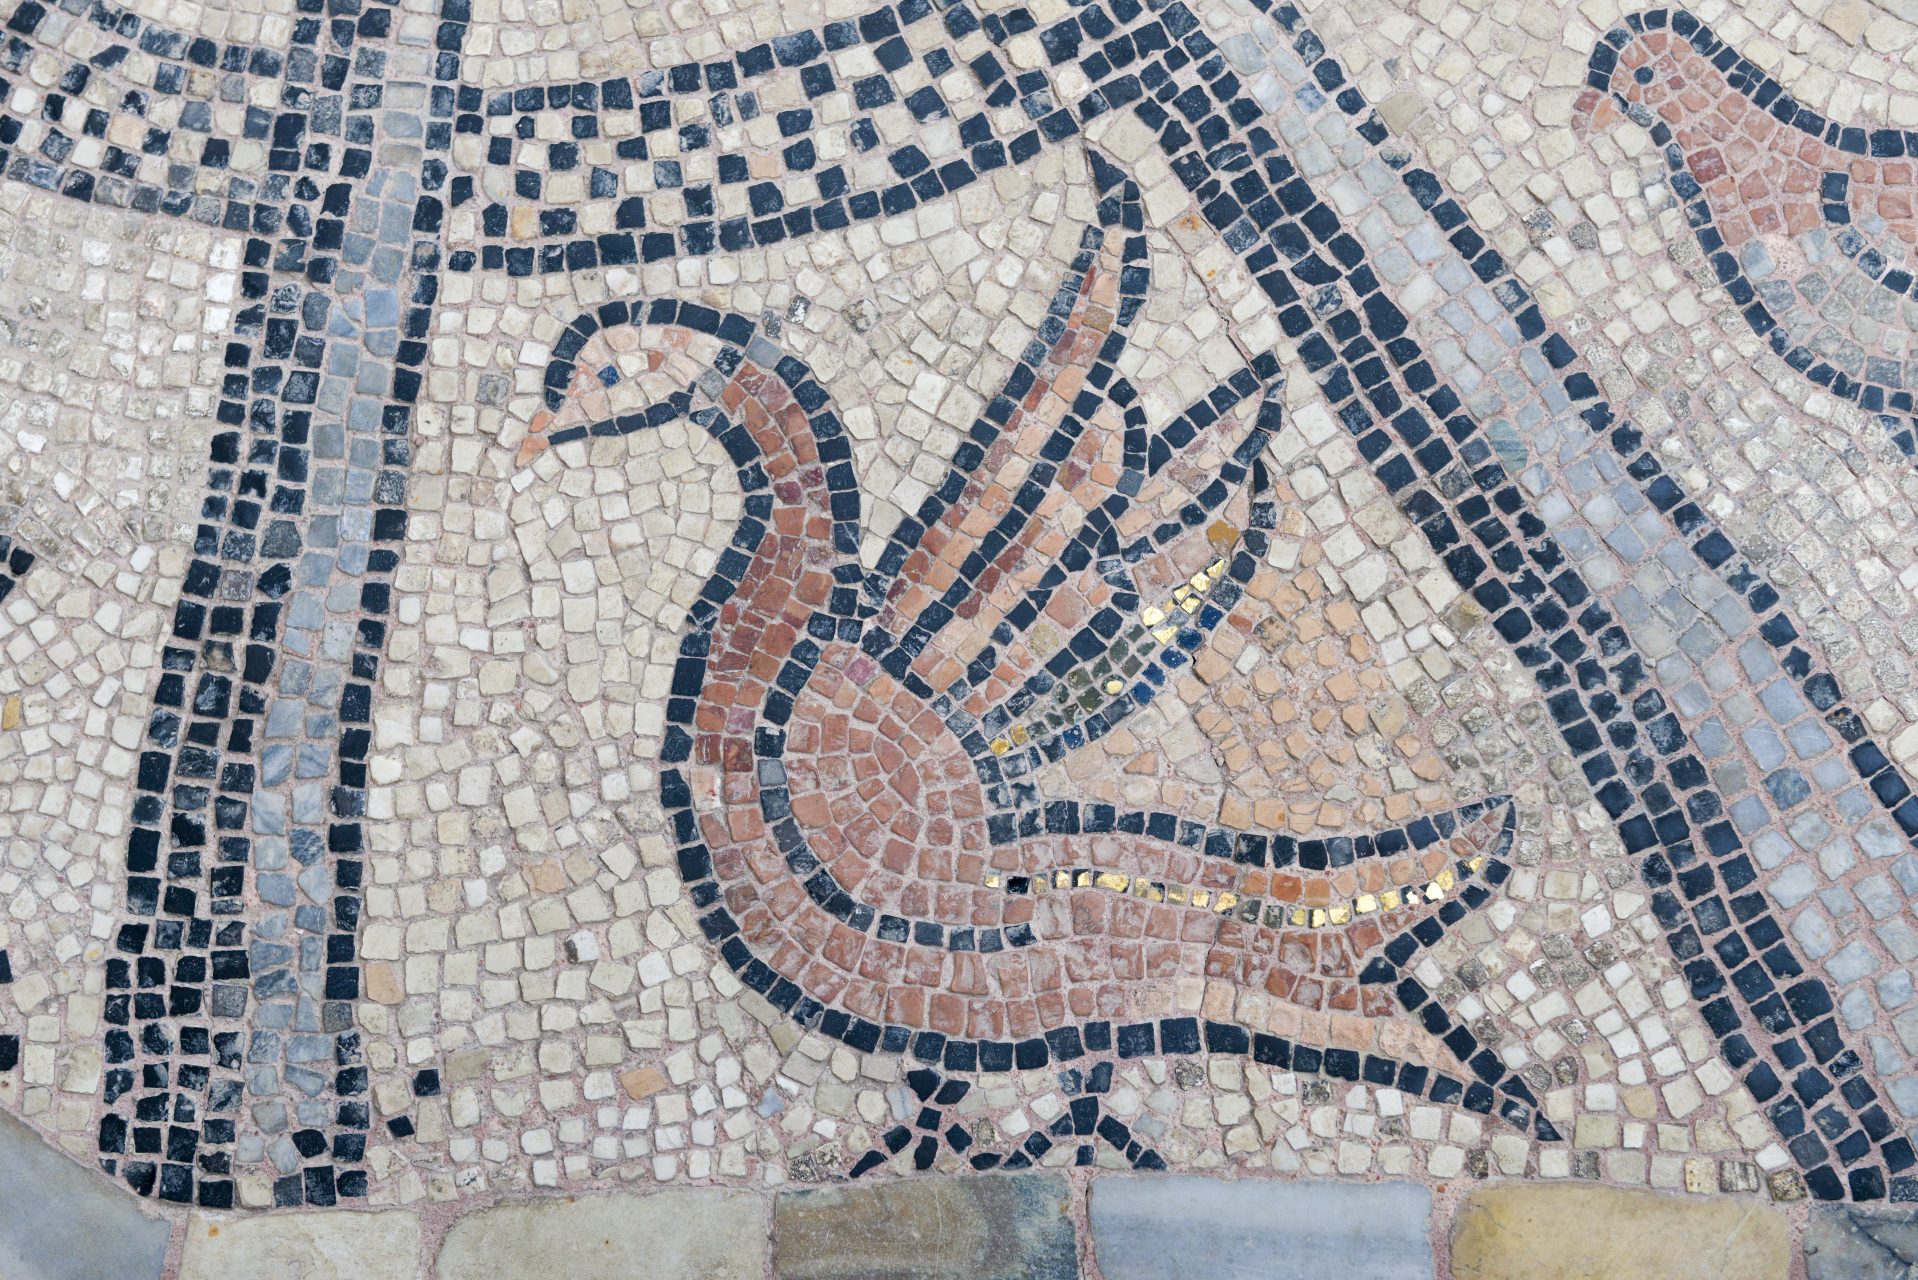 Cappella d'Oro of de San Tarasio kapel - de veneto-byzantijnse mozaiekvloer met dieren motieven uit 1176. Oorspronkelijke vloer van de romaanse kerk, gerestaureerd met hulp van Stichting Nederlands Venetie Comité in 2010